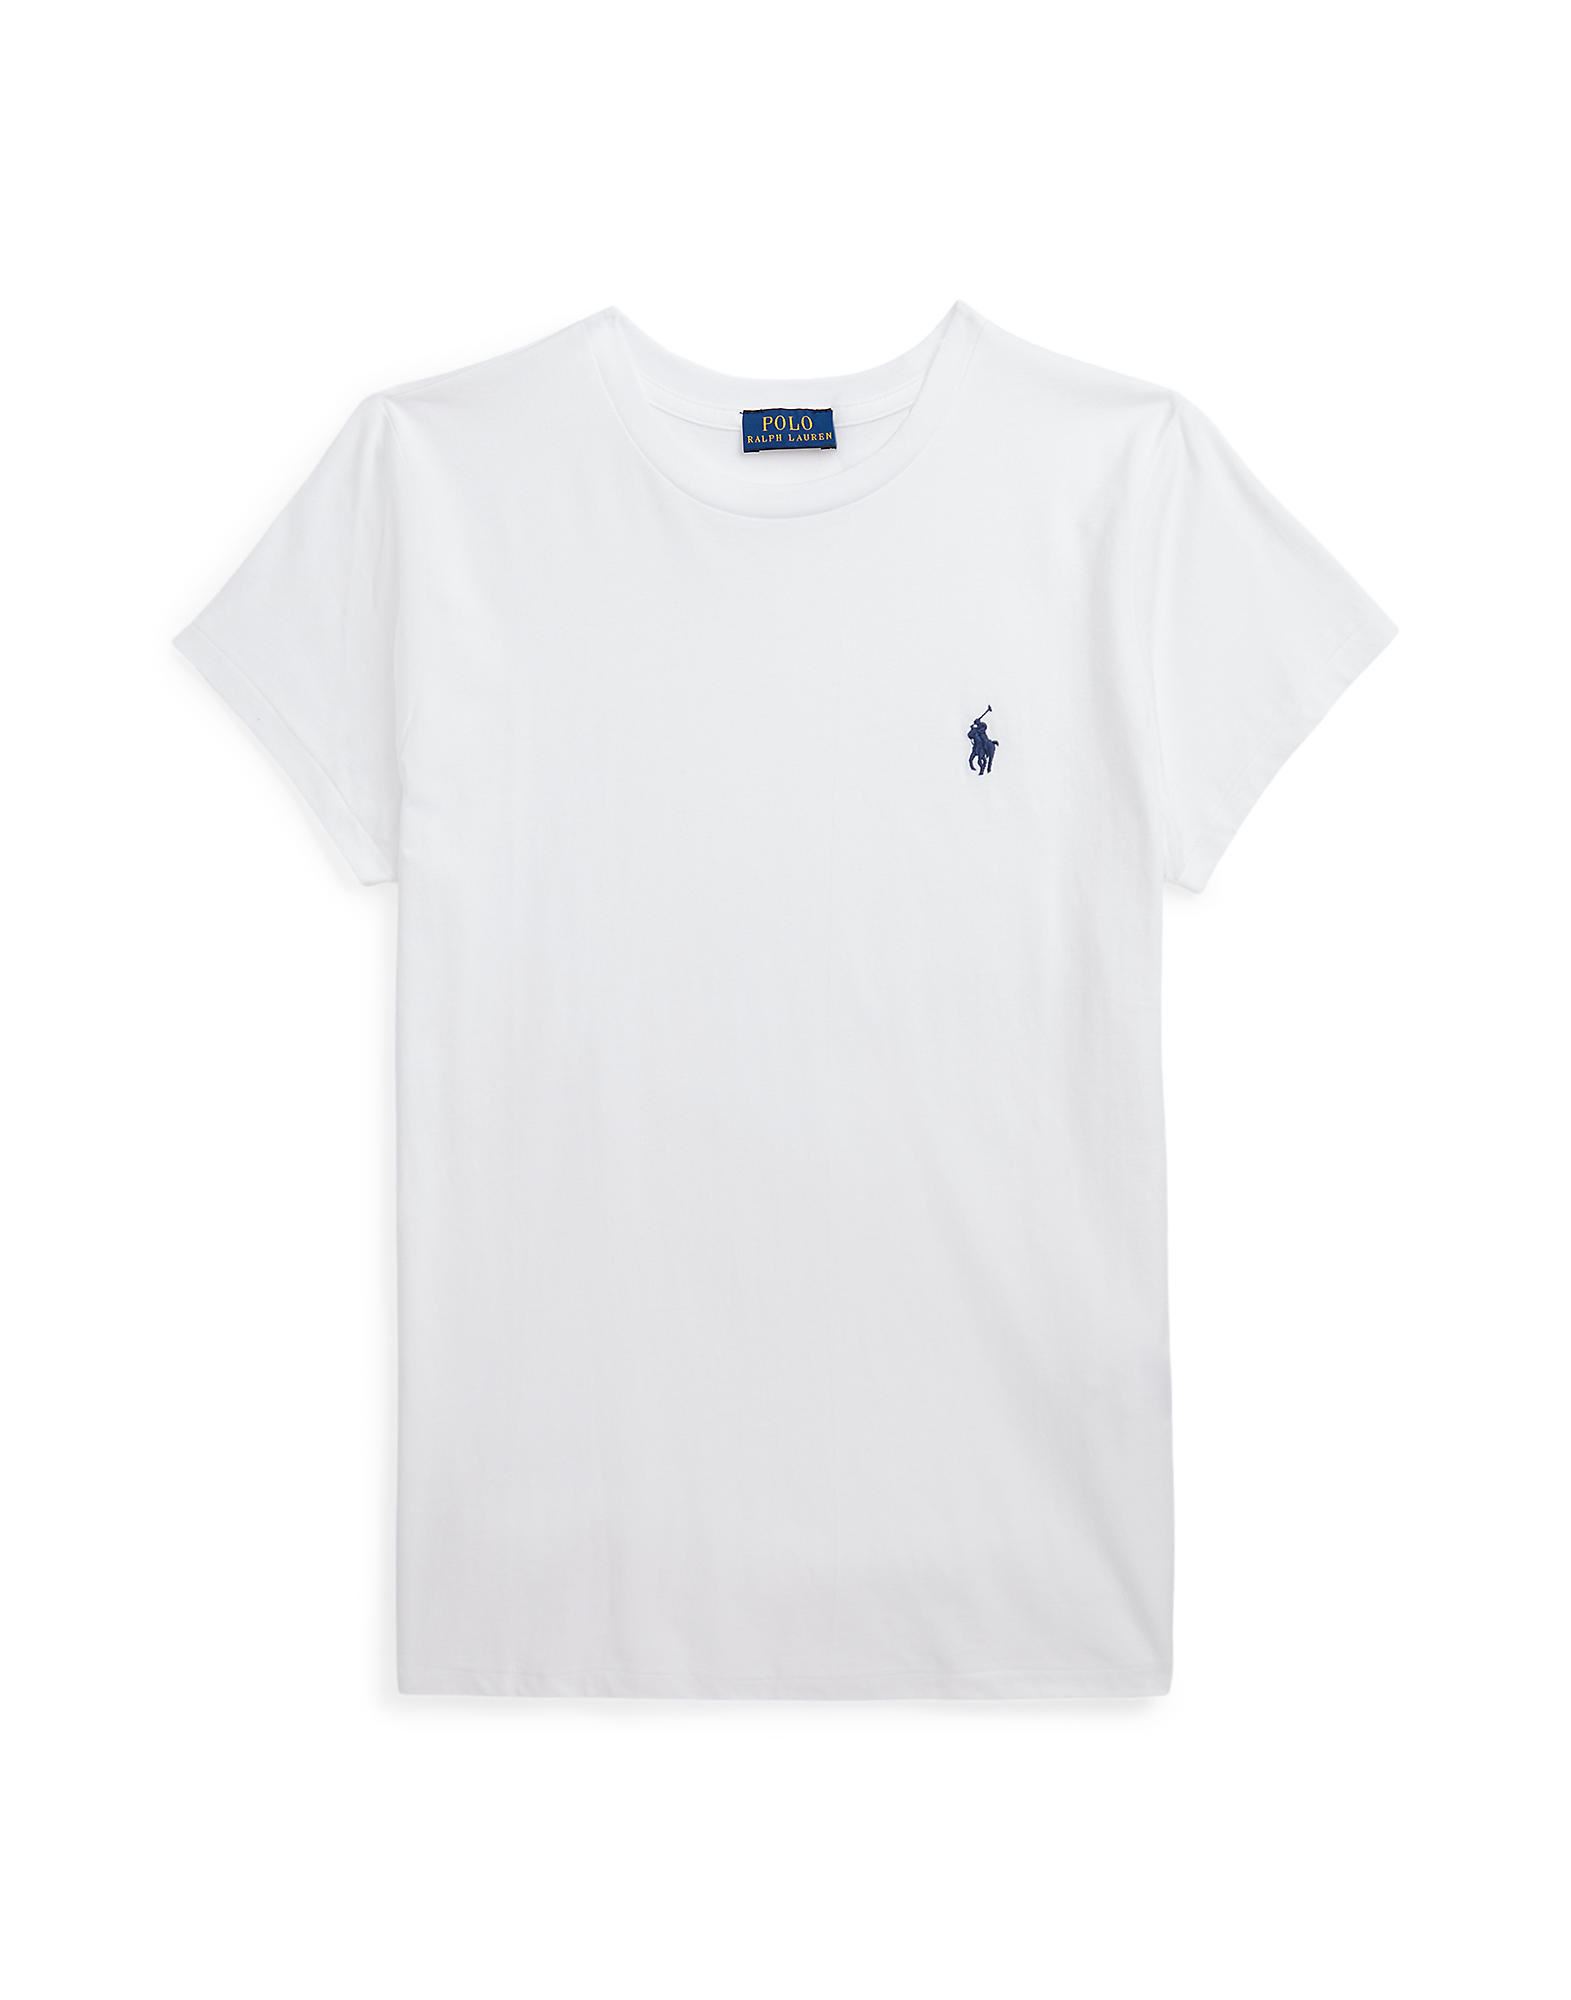 Polo Ralph Lauren Woman T-shirt White Size Xl Cotton